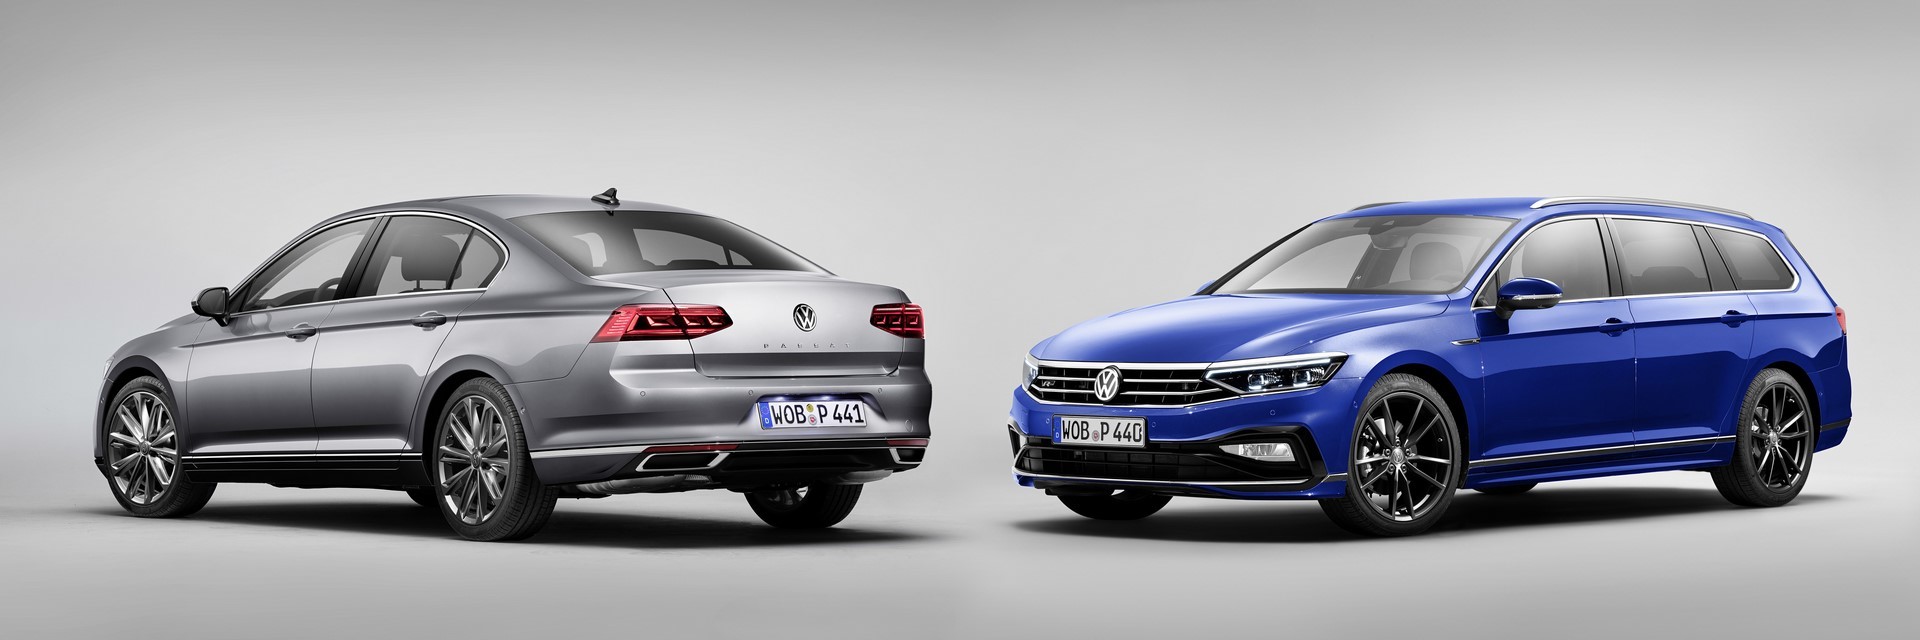 The new Volkswagen Passat and Passat Variant R-Line